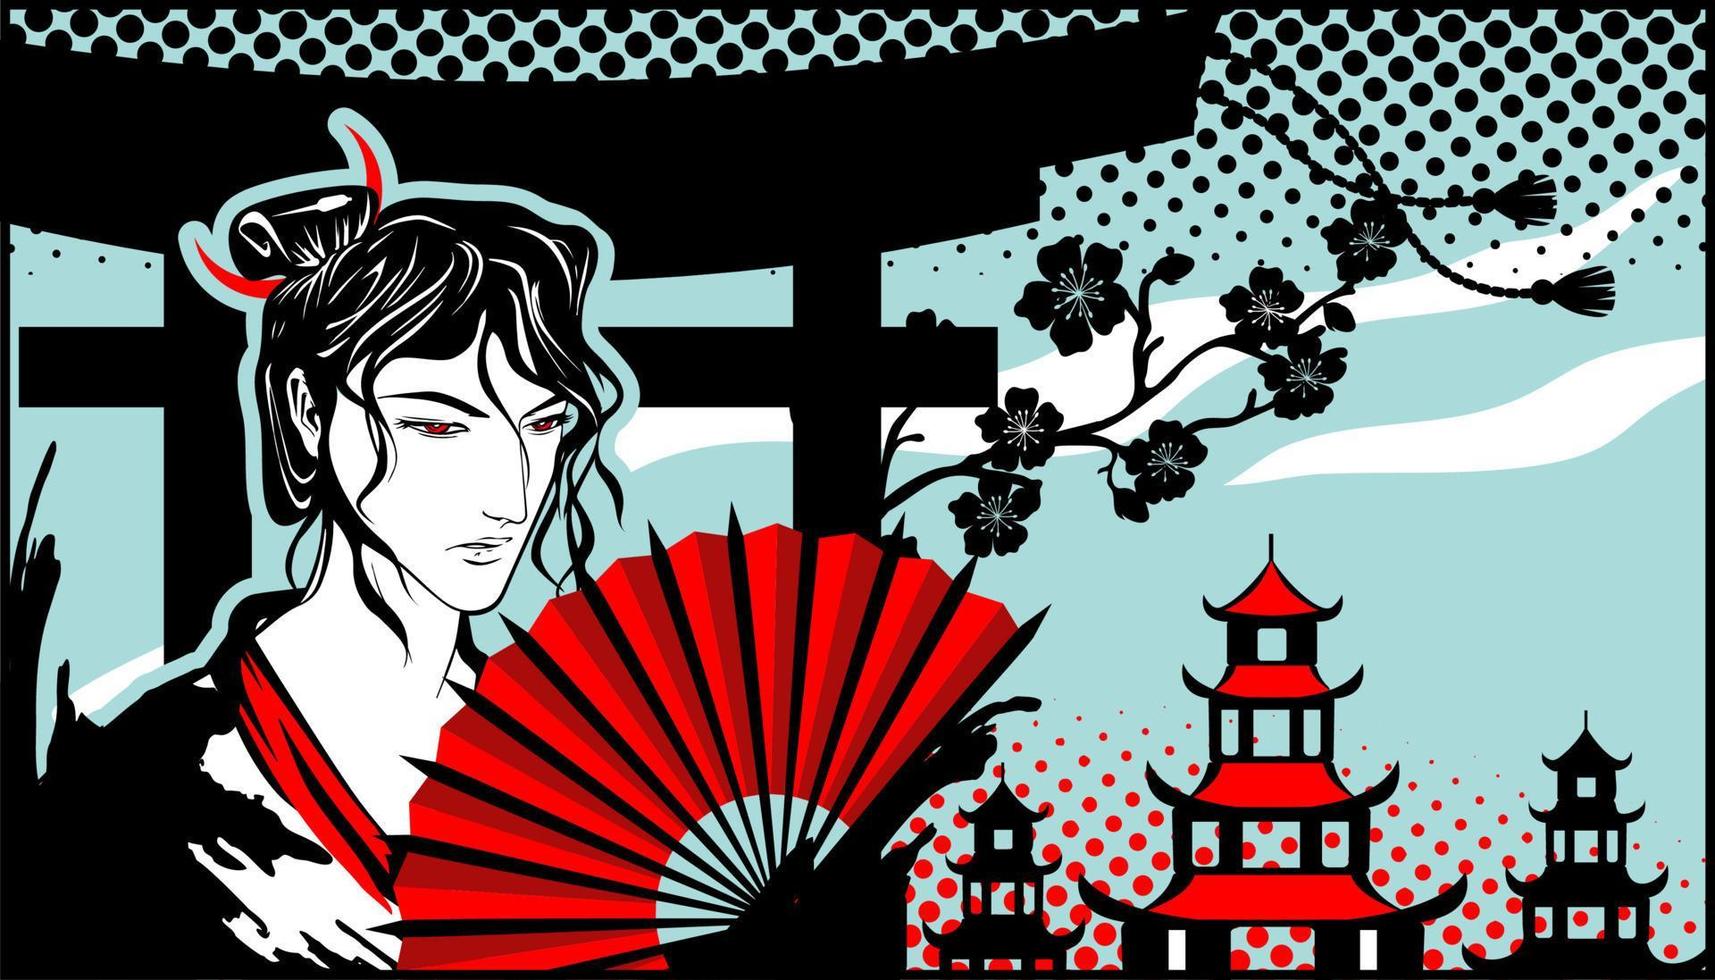 man met een rode waaier in zijn hand in de stijl van manga en anime tegen de achtergrond van pagodes en kersenbloesems. vector